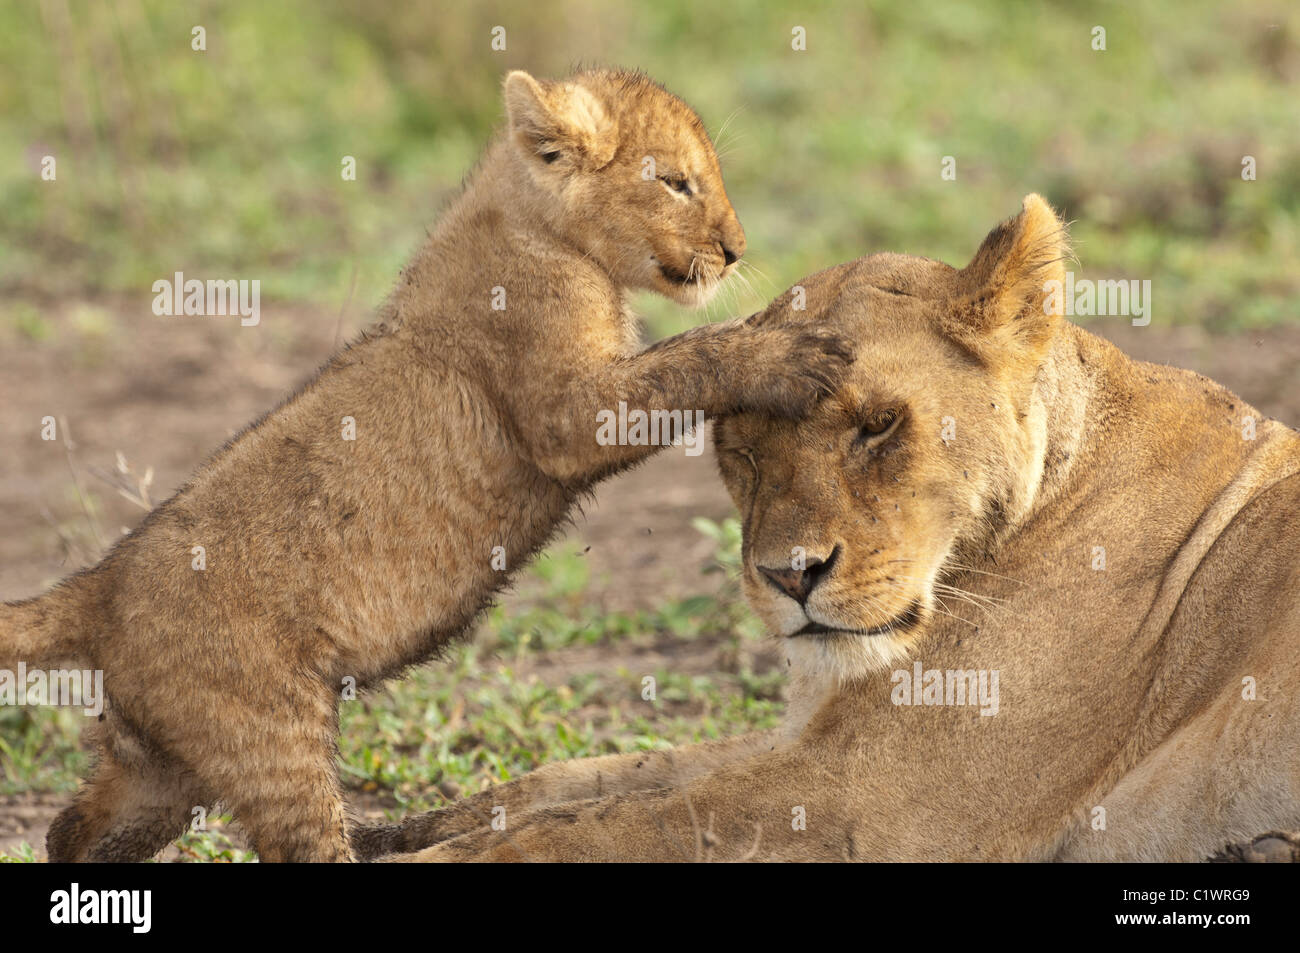 Stock Foto von Löwenjunges spielt mit seiner Mutter. Stockfoto